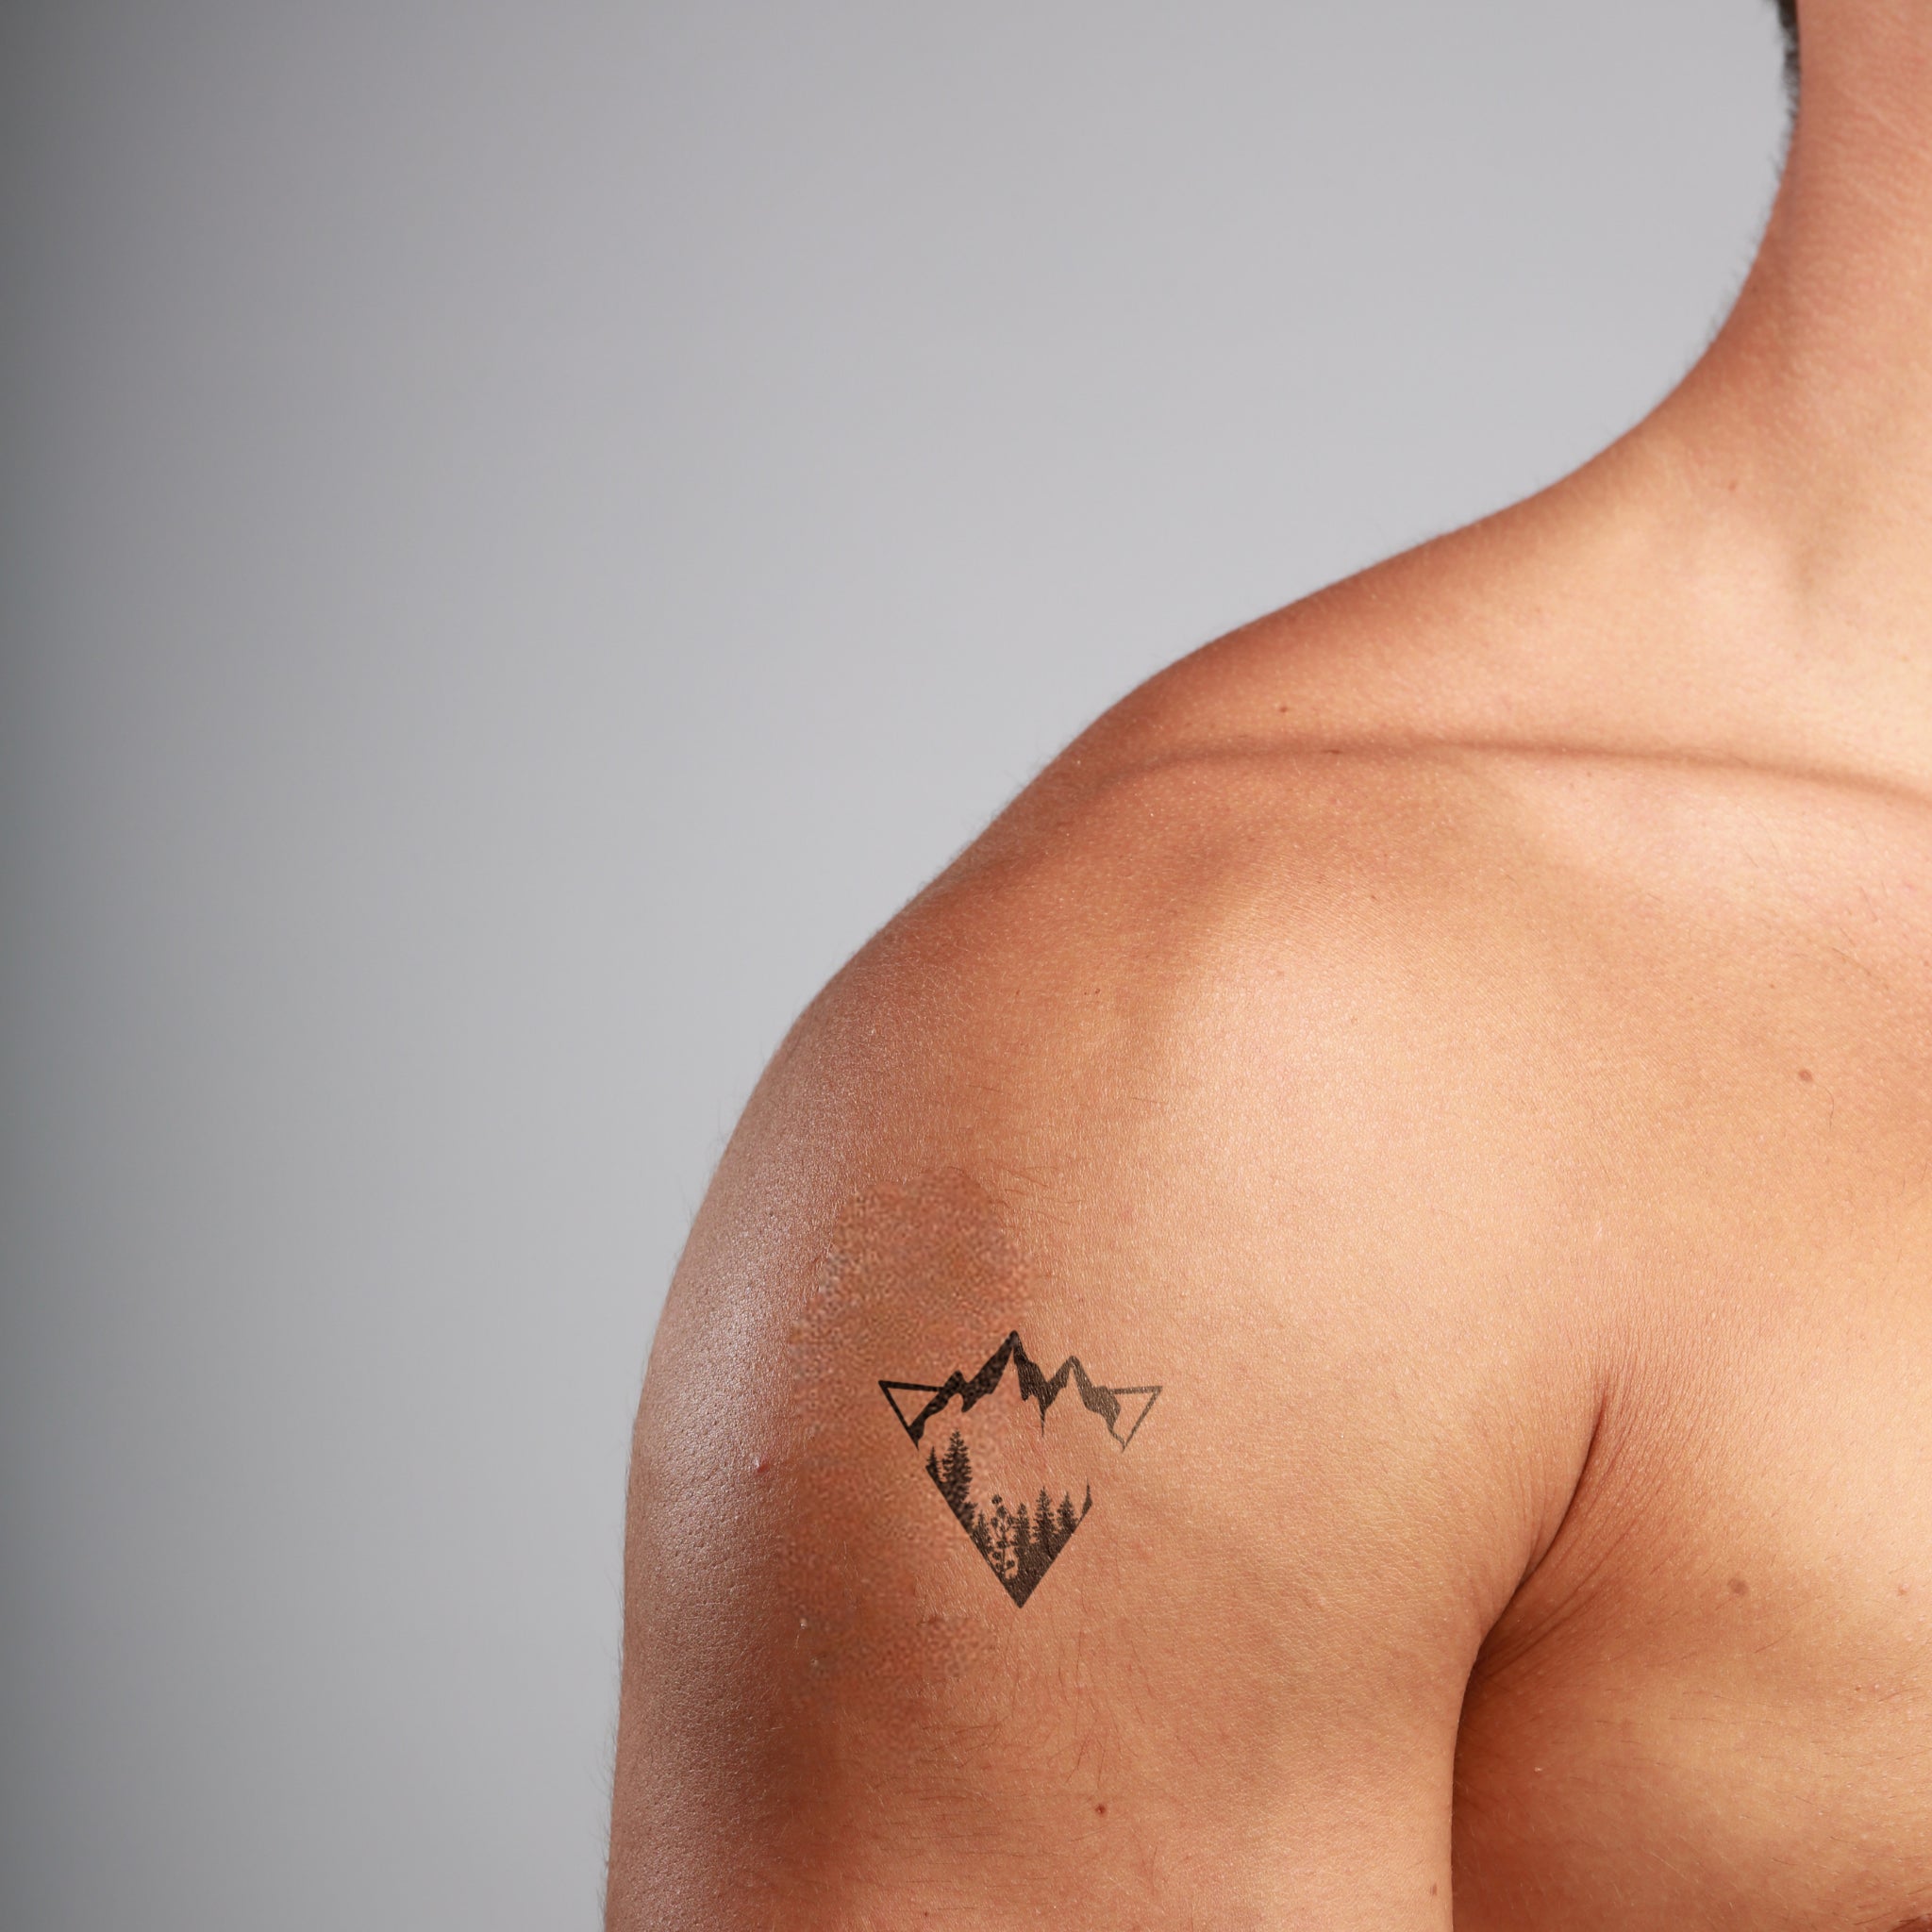 50 Minimalist Mountain Tattoos For Men - YouTube